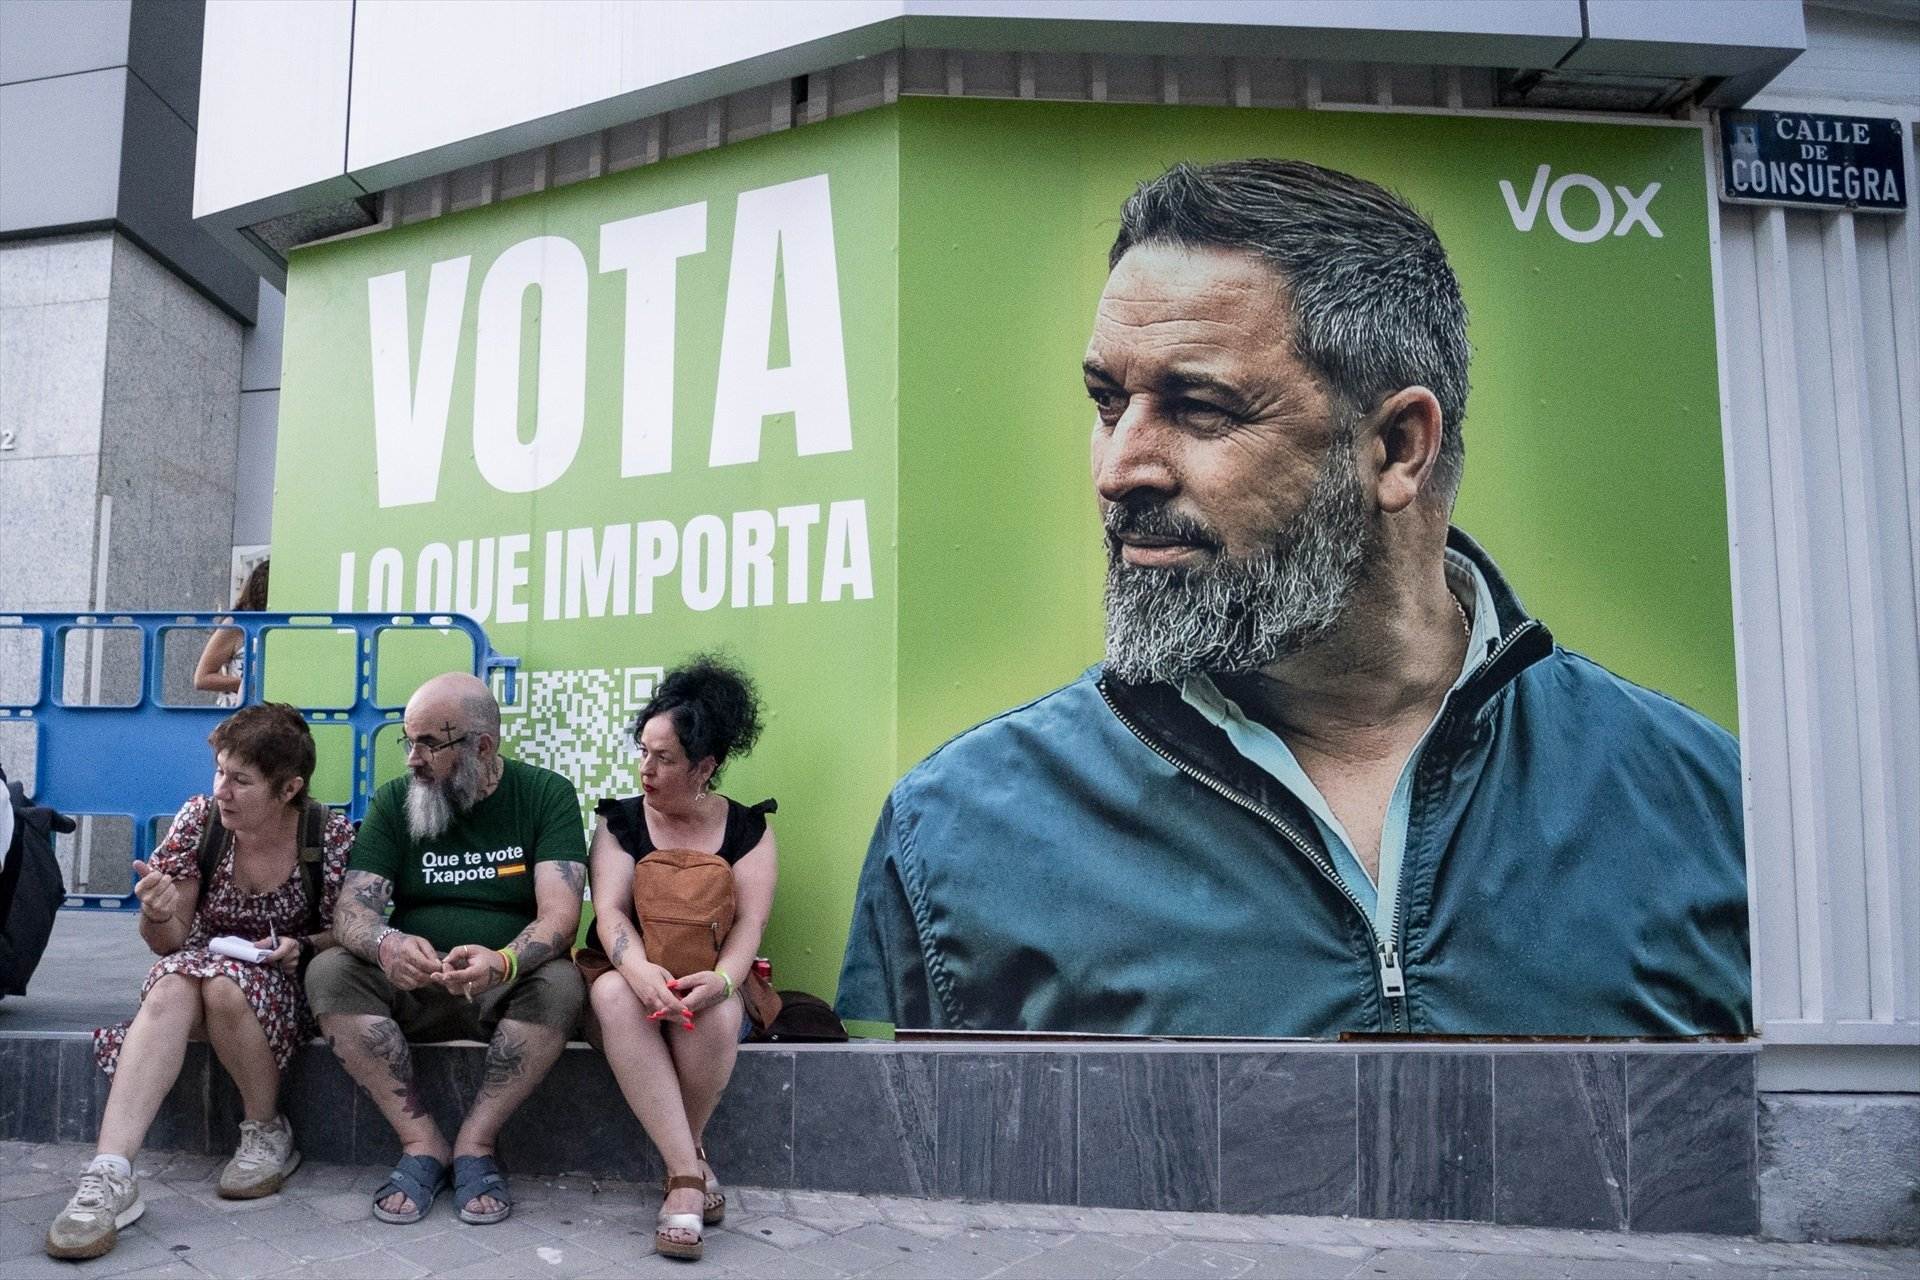 La Junta Electoral expedienta a Vox por difundir propaganda antes del inicio de campaña